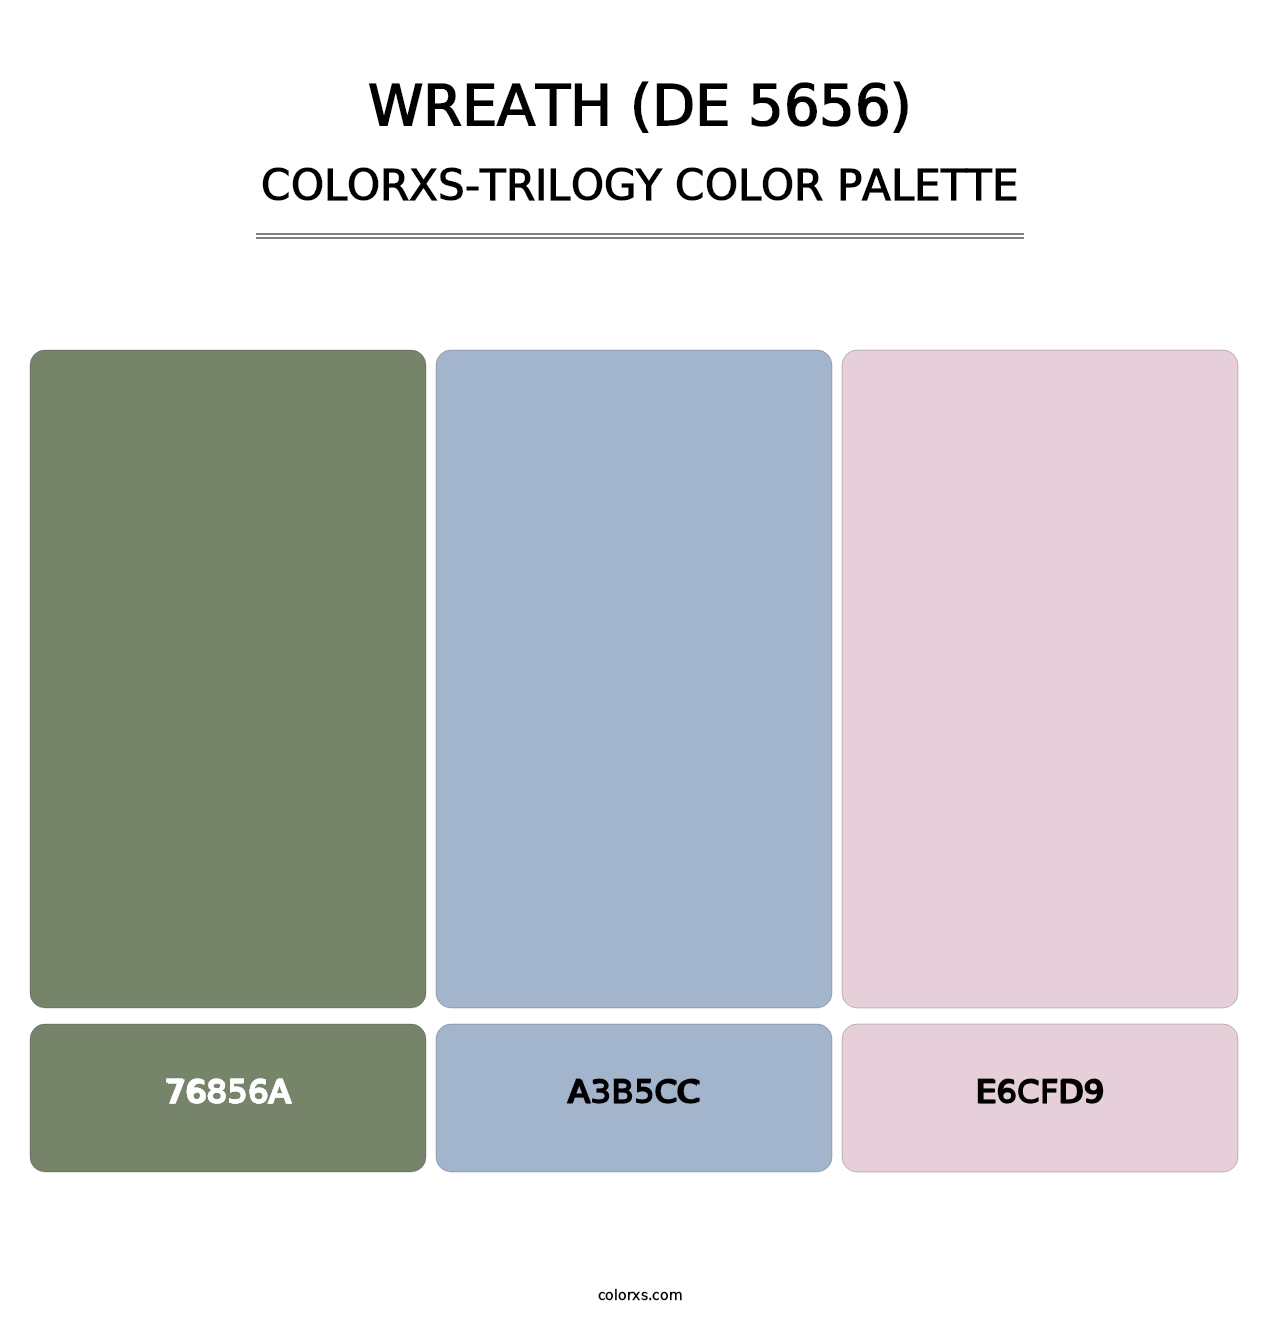 Wreath (DE 5656) - Colorxs Trilogy Palette